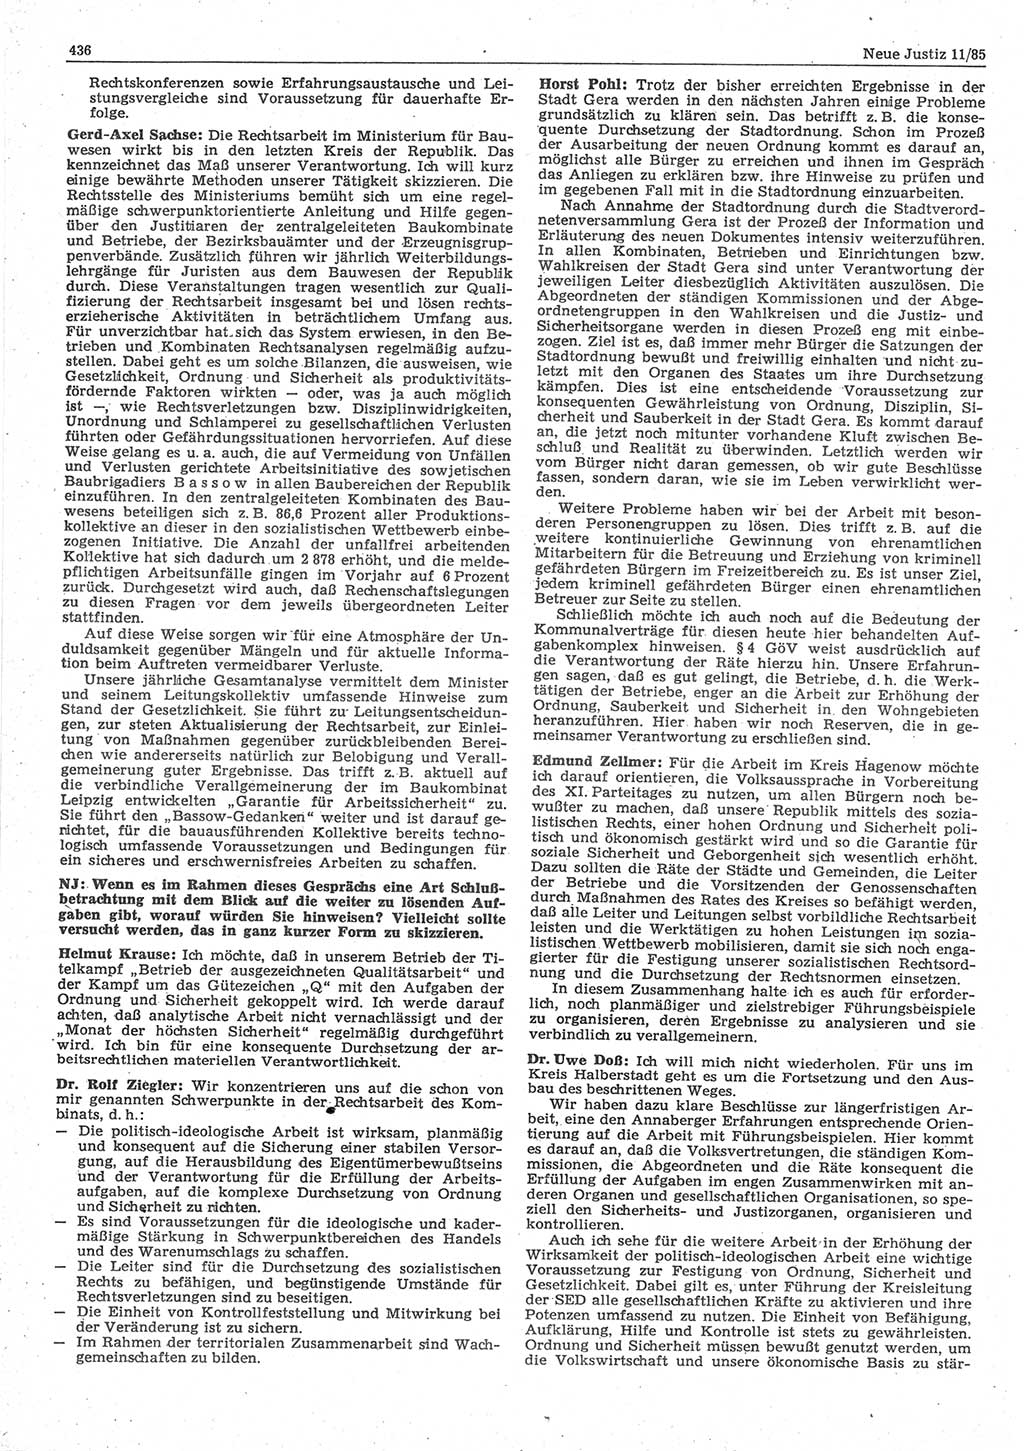 Neue Justiz (NJ), Zeitschrift für sozialistisches Recht und Gesetzlichkeit [Deutsche Demokratische Republik (DDR)], 39. Jahrgang 1985, Seite 436 (NJ DDR 1985, S. 436)